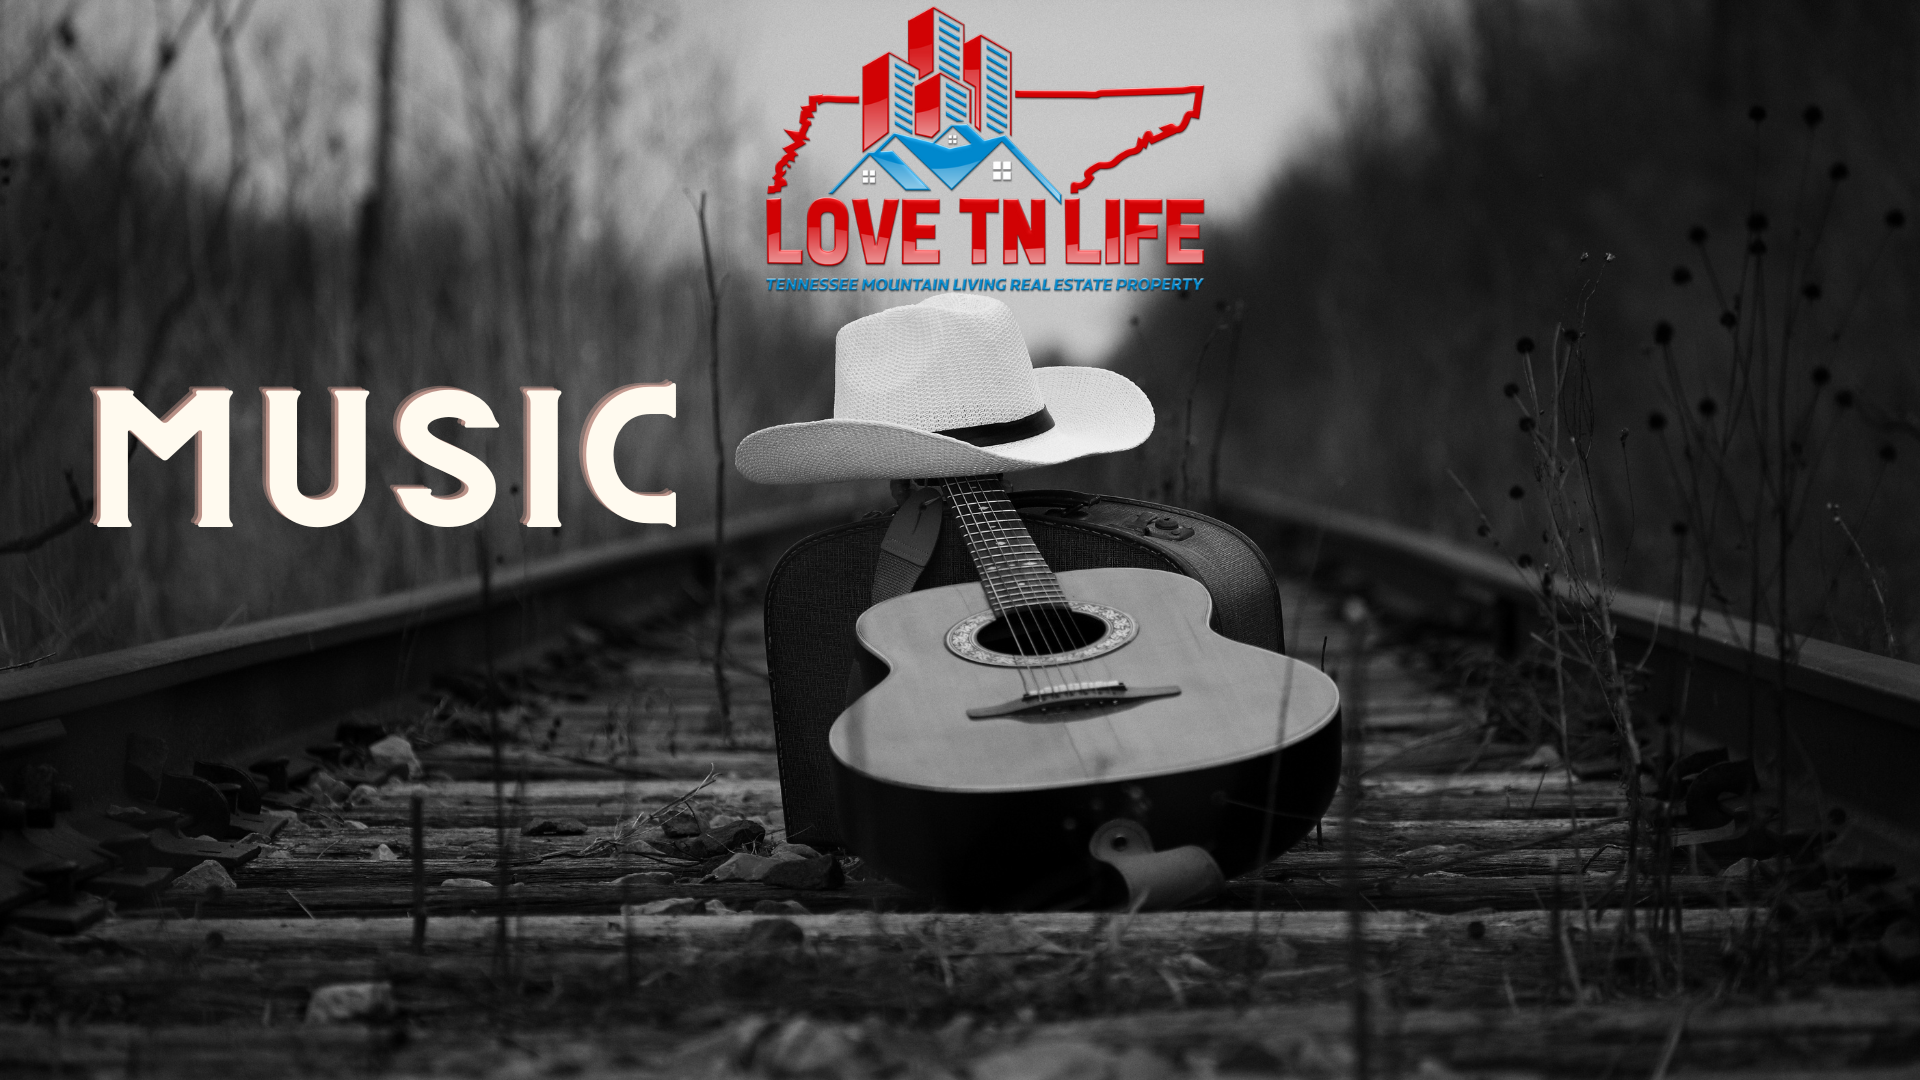 Love TN Music @ LoveTNLife.com